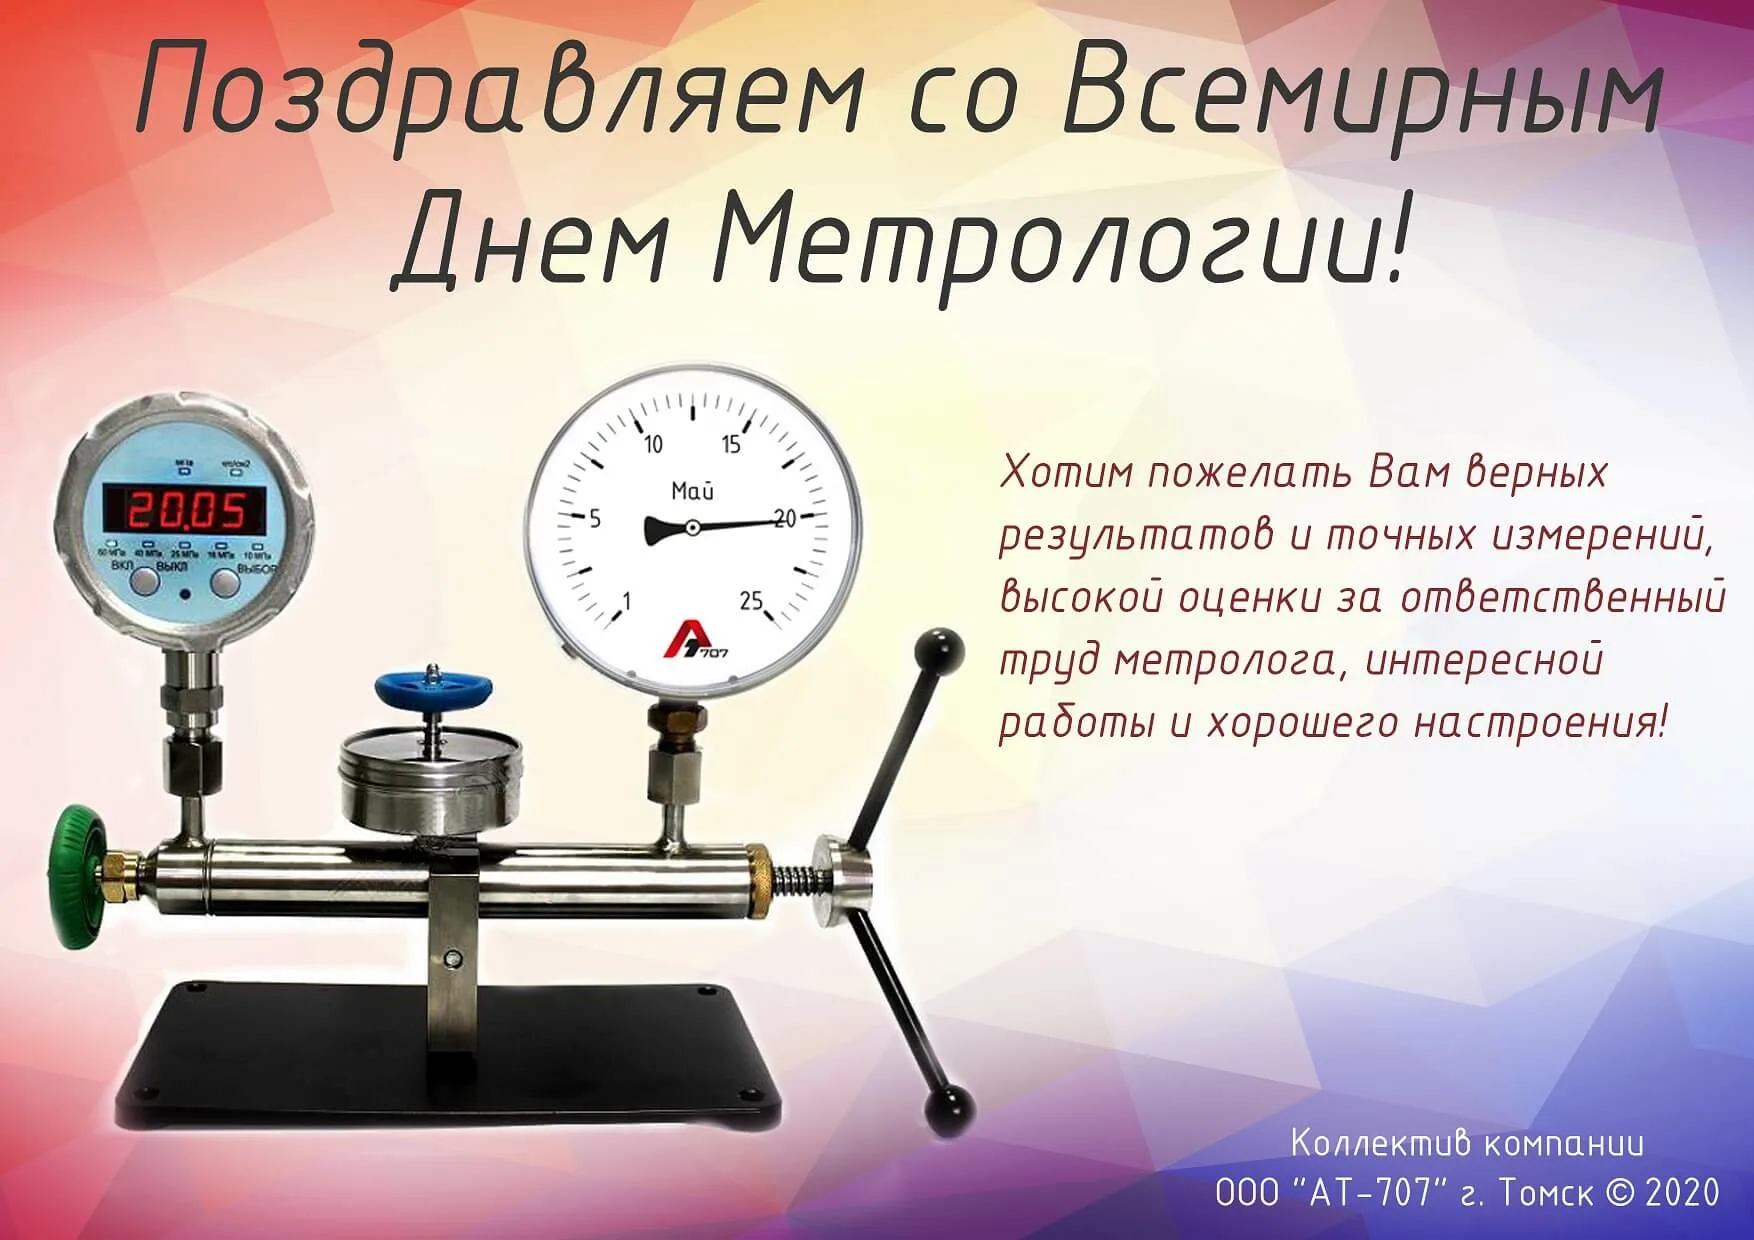 Фото Поздравления в день работников стандартизации и метрологии Украины #3